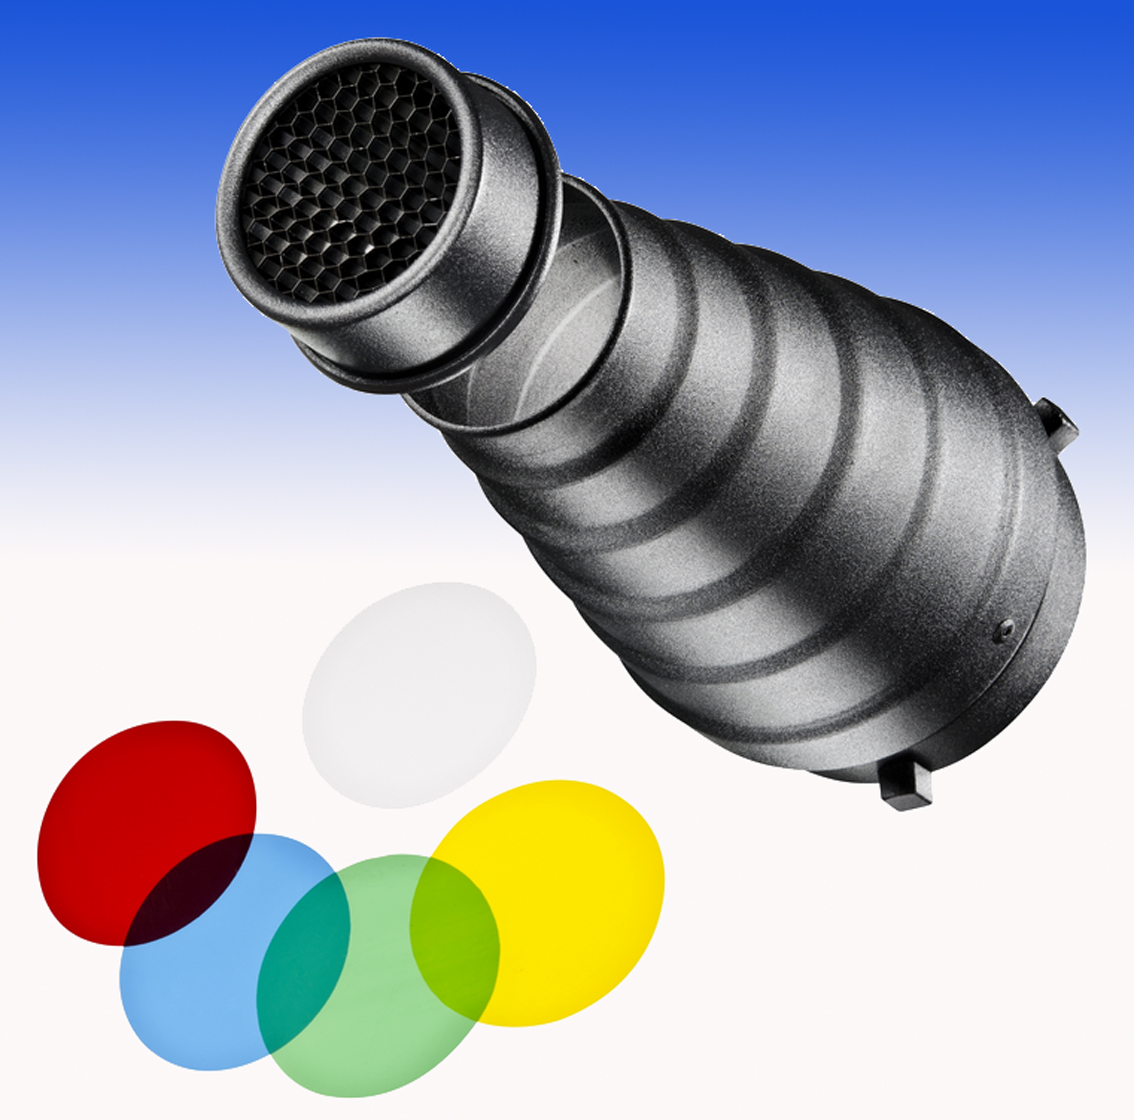 Walimex Spotvorsatz und Filter für Elinchrom mit Elinchrom-Speedring, 2 Wabengitter und 5 Farbfilter